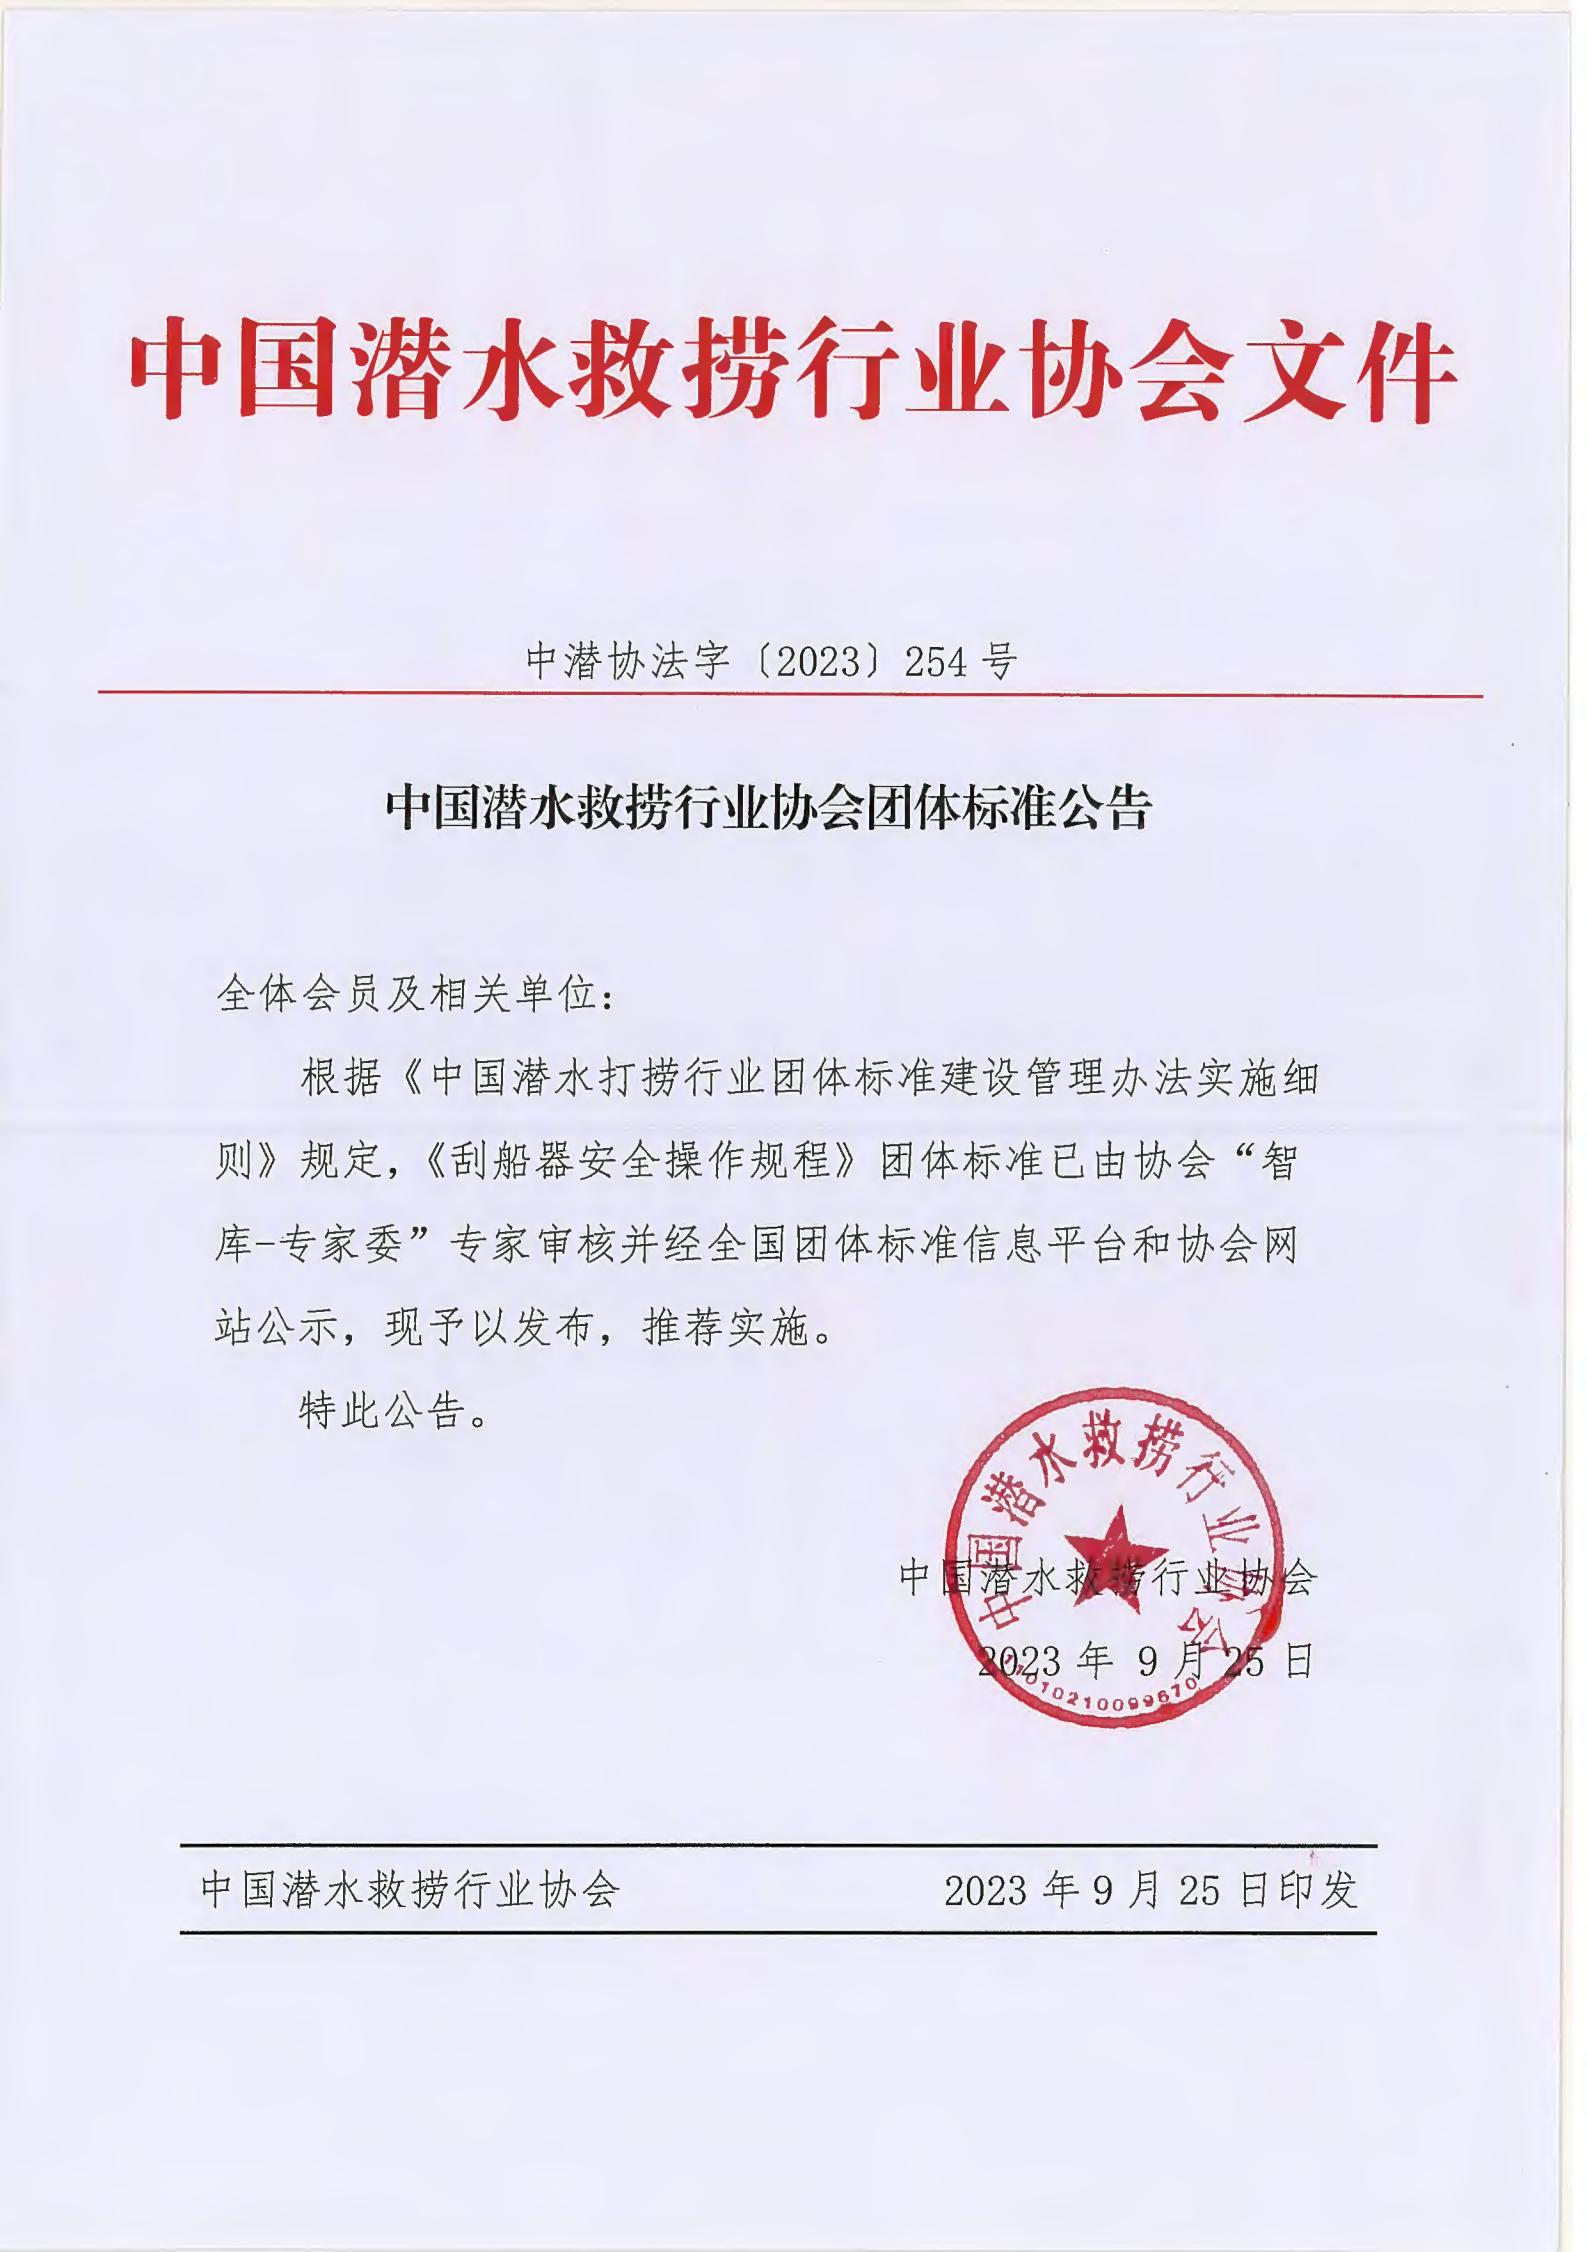 中国潜水救捞行业协会团体标准公告-中潜协法字【2023】254号_00.jpg